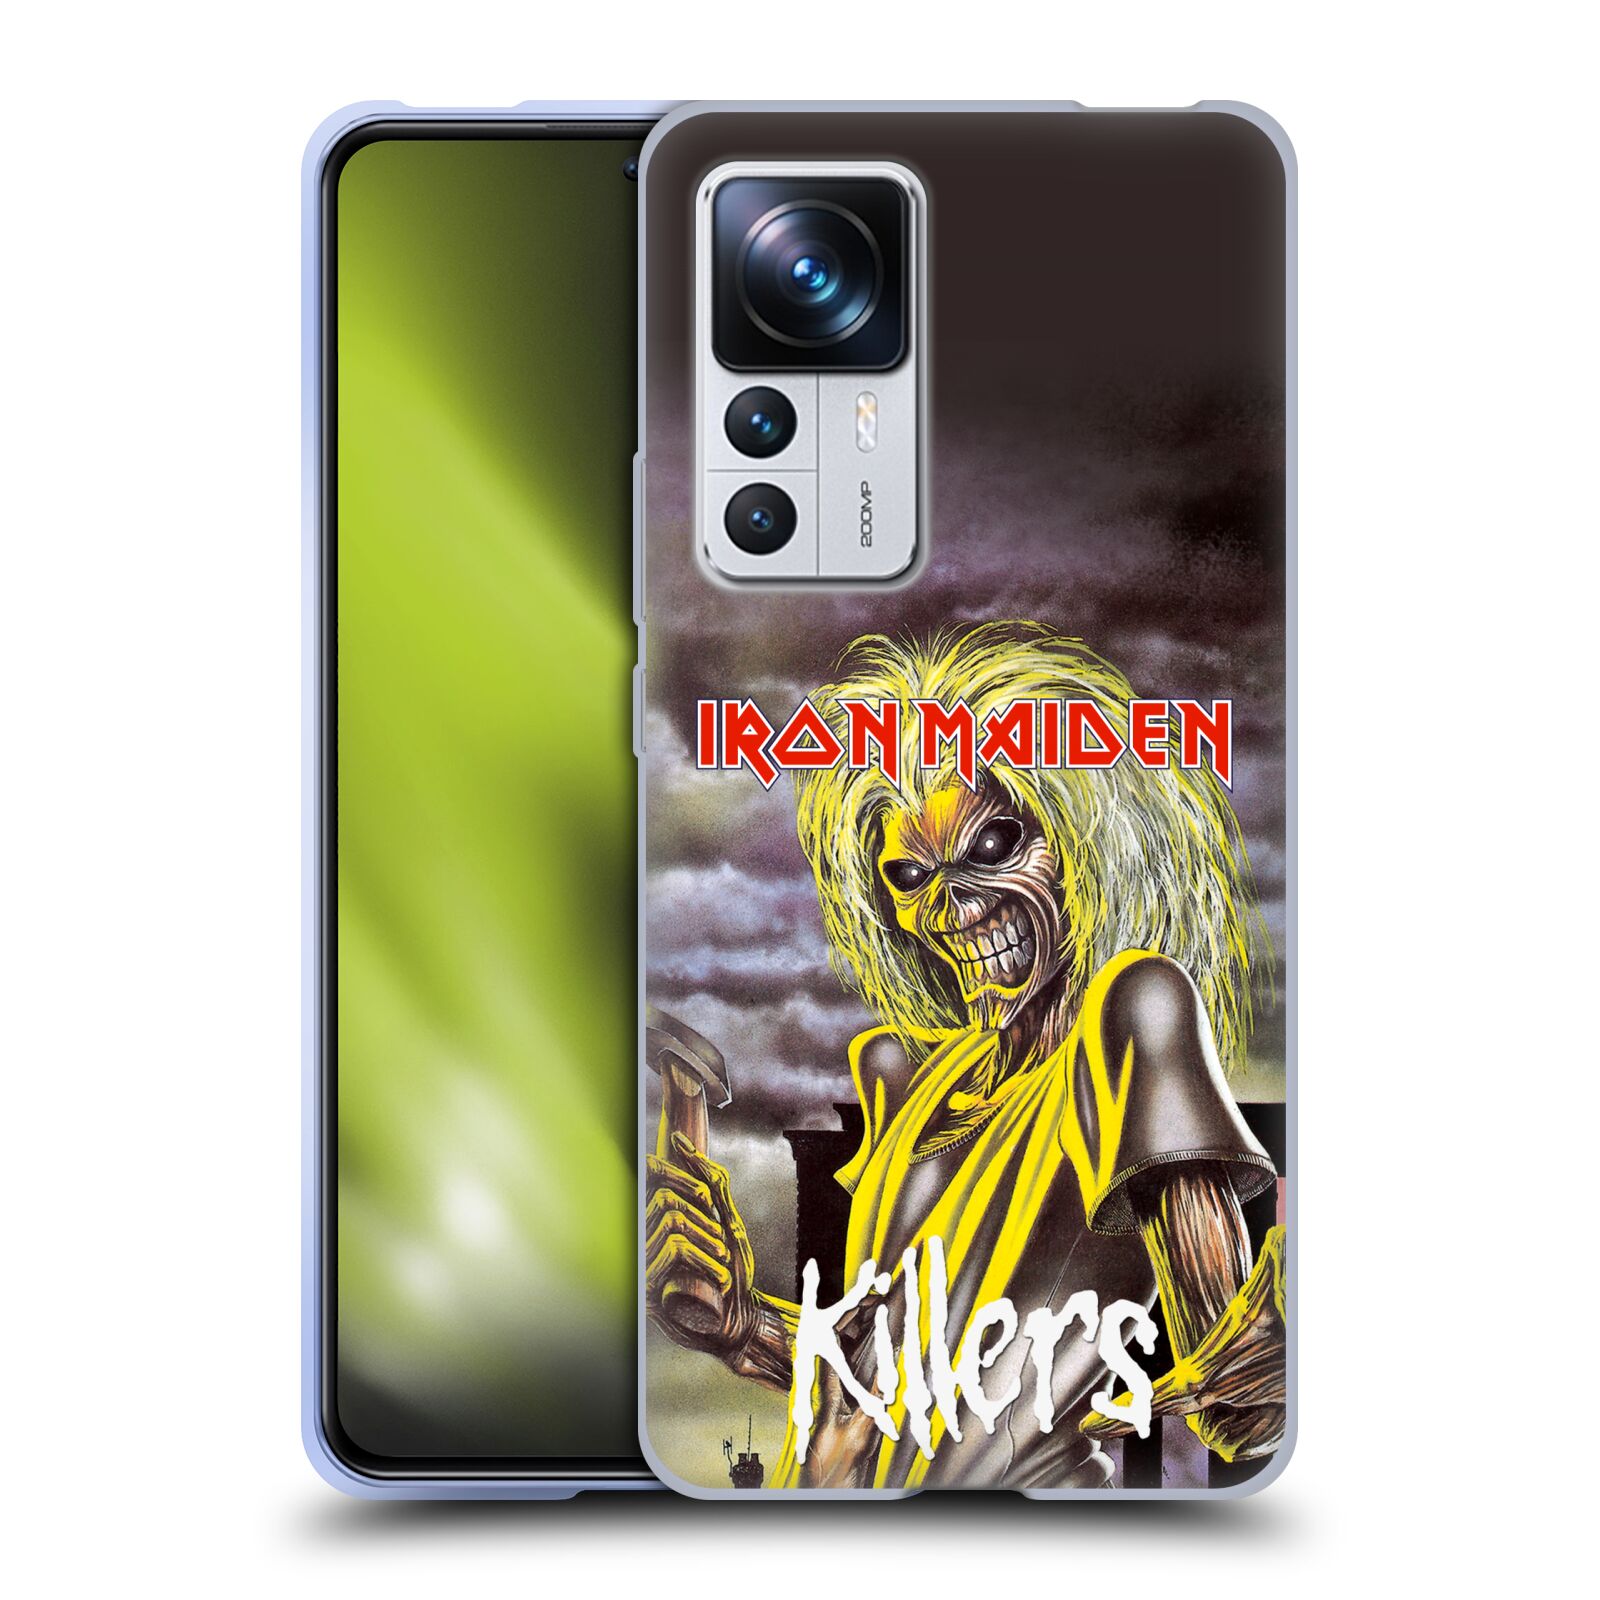 Silikonové pouzdro na mobil Xiaomi 12T / 12T Pro - Head Case - Iron Maiden - Killers (Silikonový kryt, obal, pouzdro na mobilní telefon Xiaomi 12T / 12T Pro s motivem Iron Maiden - Killers)